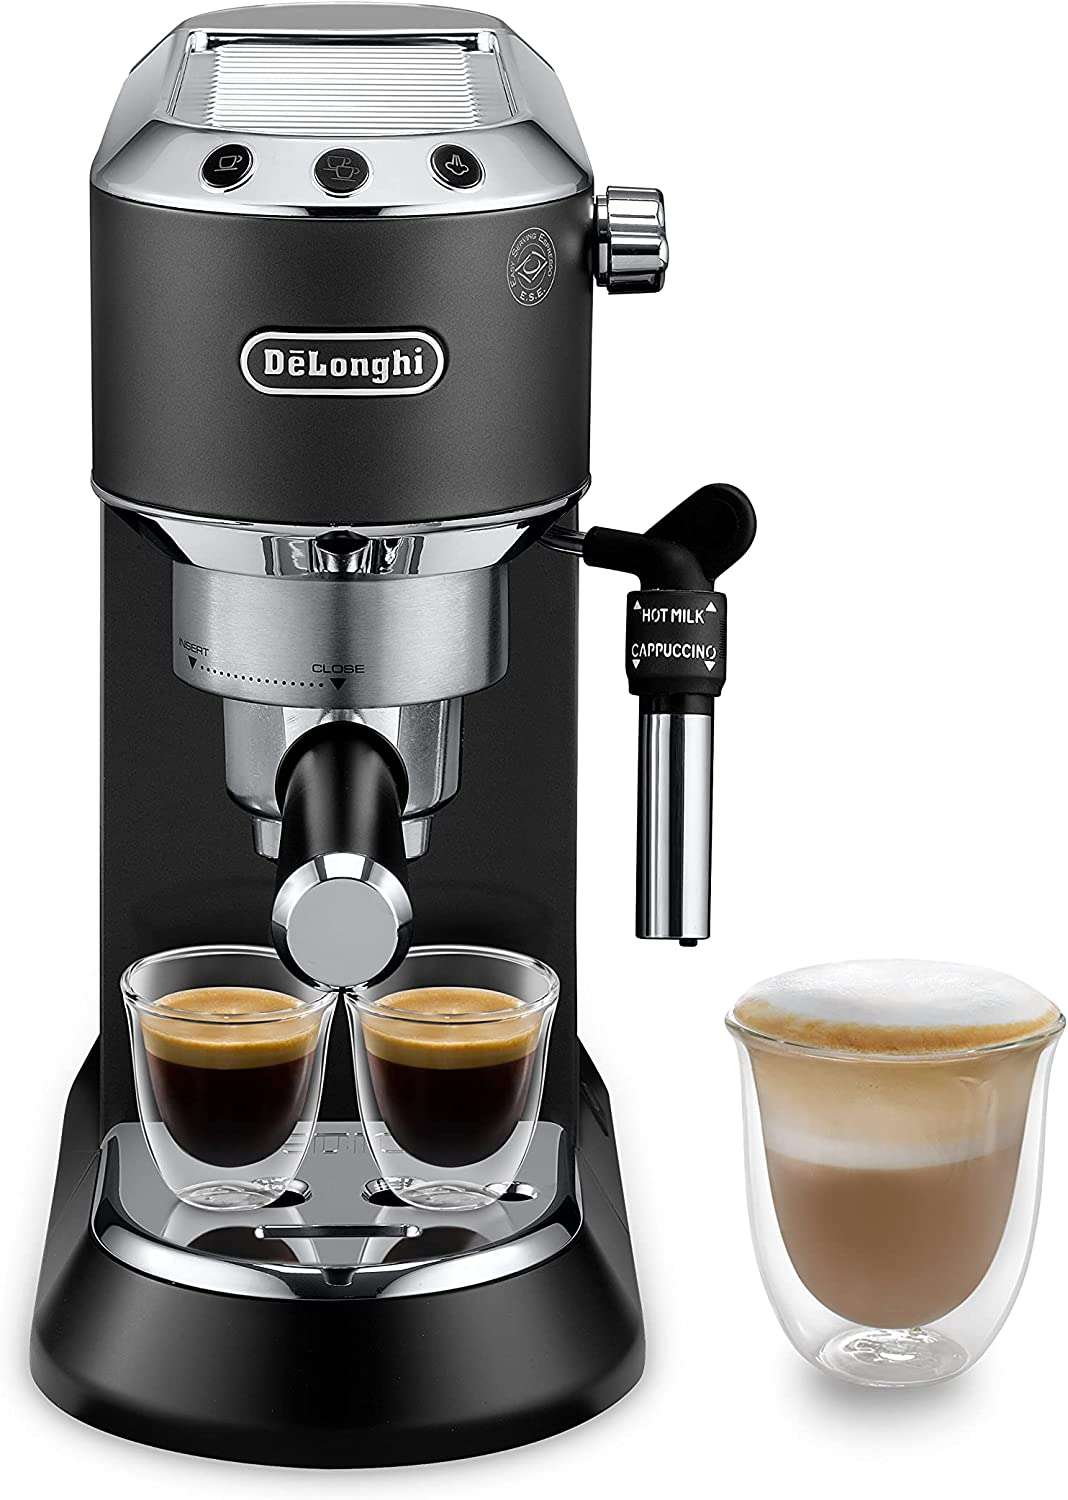 Bon plan Noël : les 10 meilleures offres de machines à café © Amazon